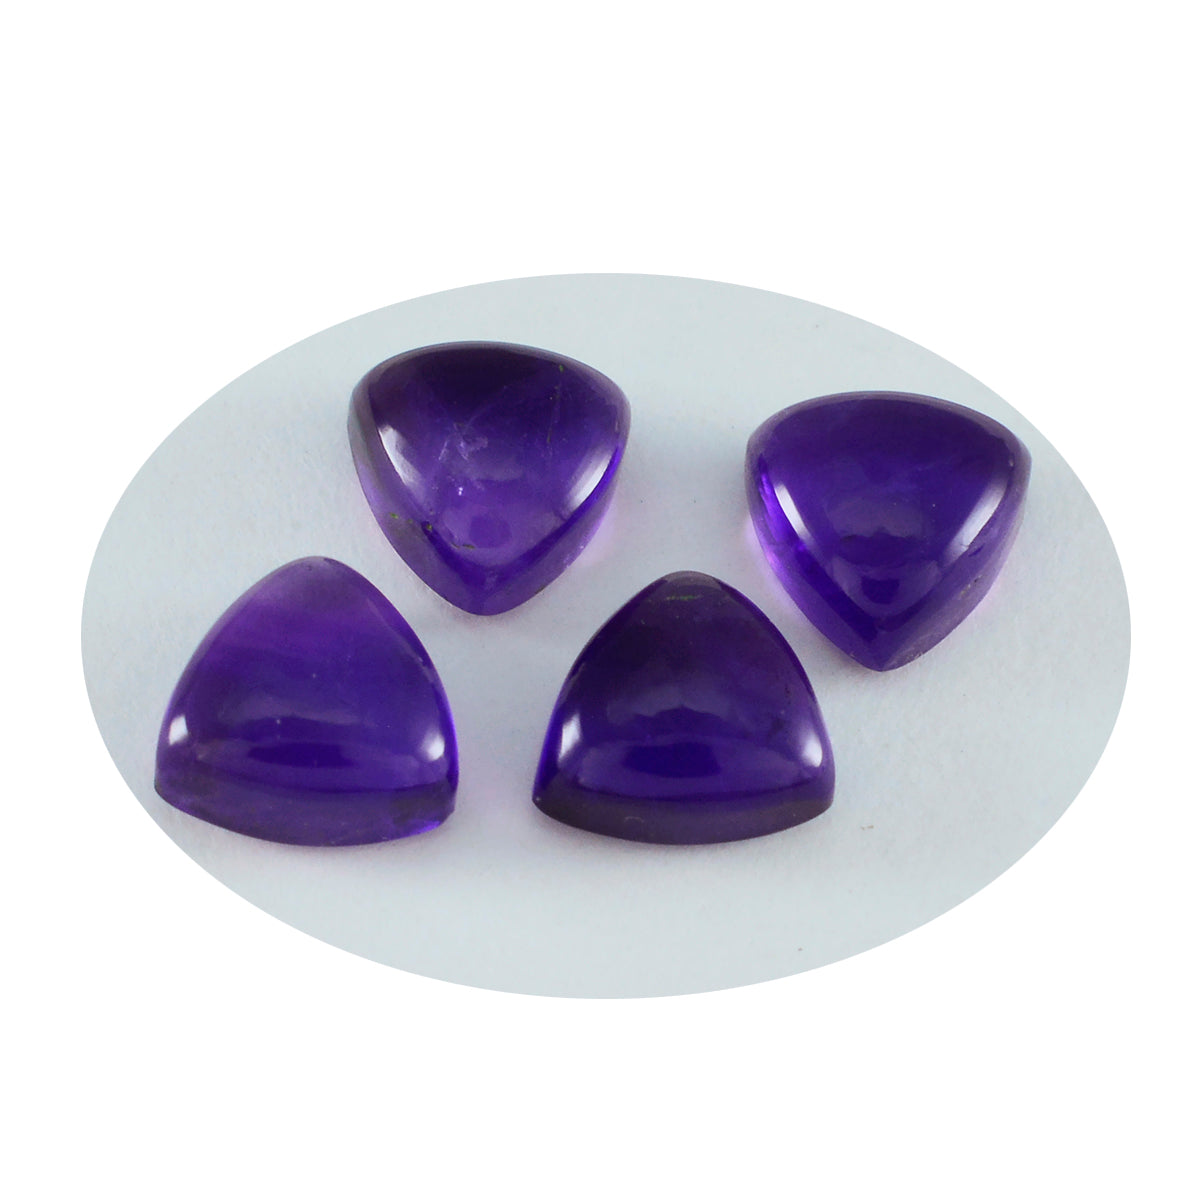 Riyogems 1PC Purple Amethyst Cabochon 4x4 mm Trillion Shape handsome Quality Gemstone